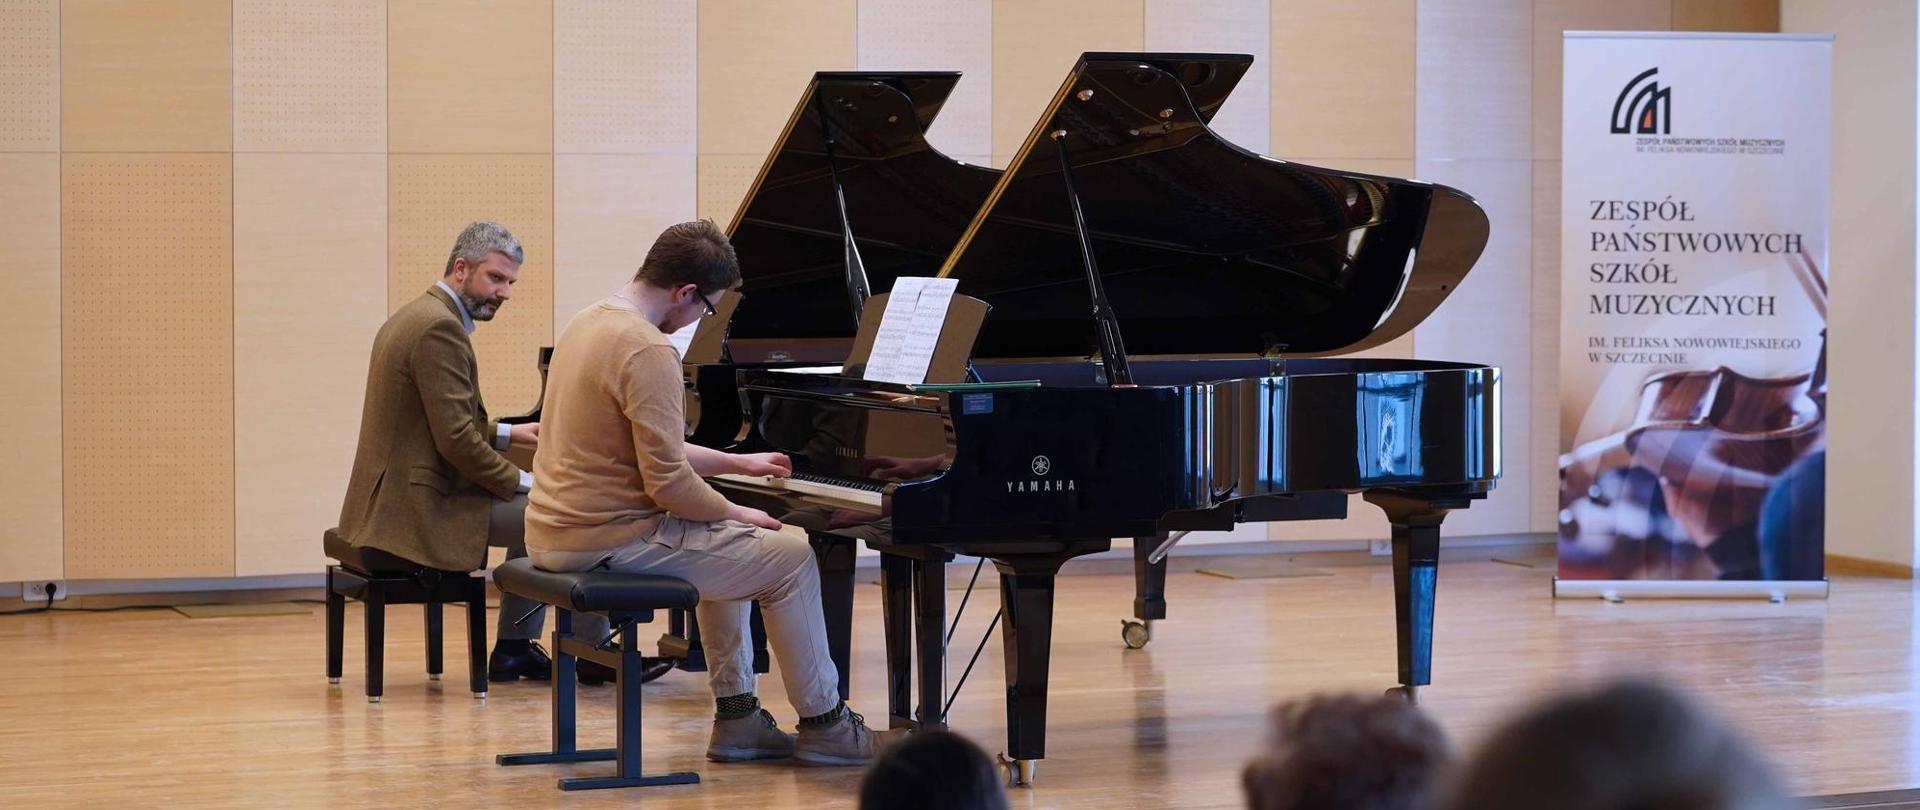 zdjęcie przedstawia ucznia wykonującego ćwiczenie w duecie razem z wykładowcą przy dwóch fortepianach na scenie sali koncertowej